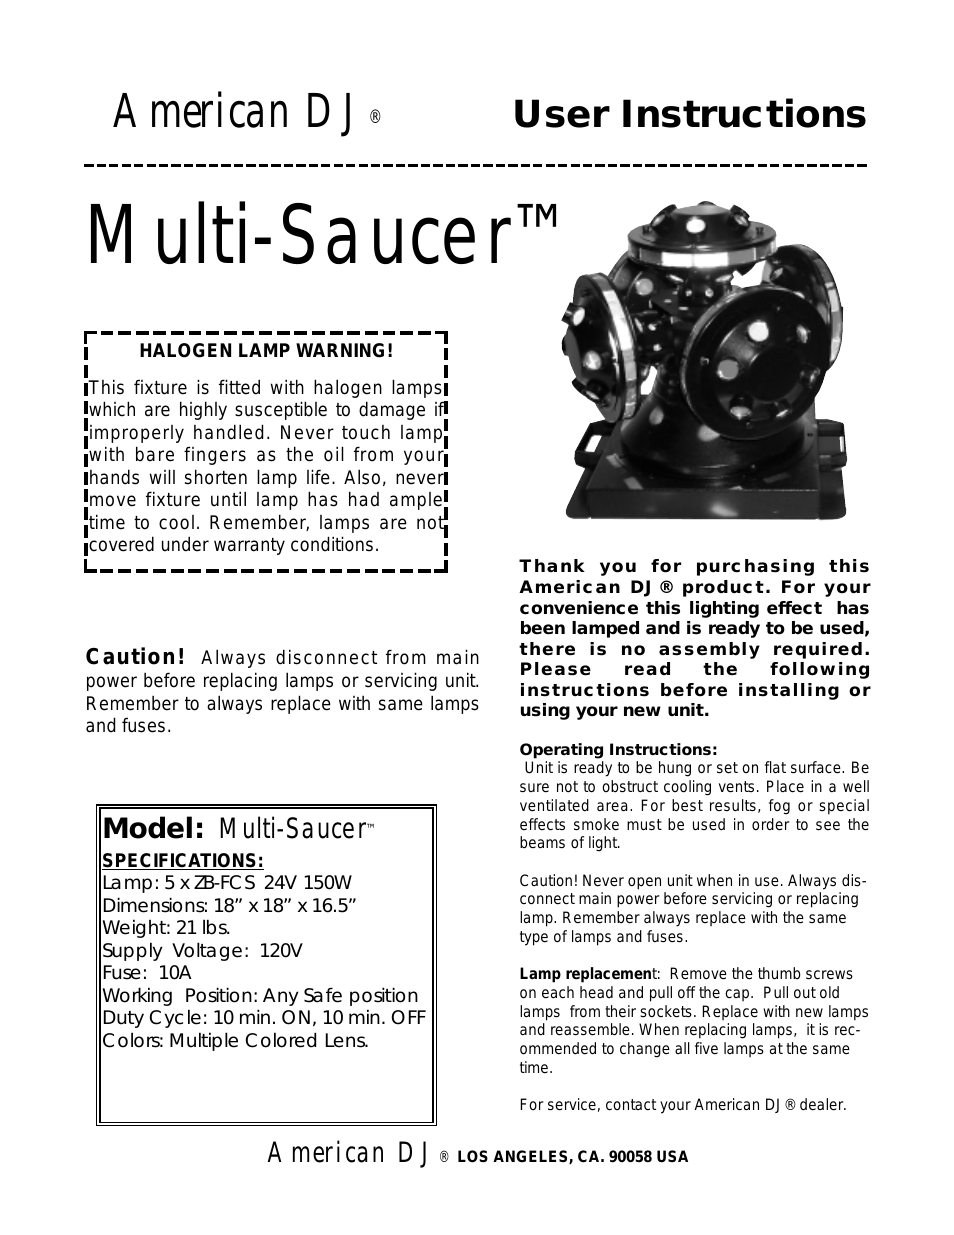 Multi-Saucer